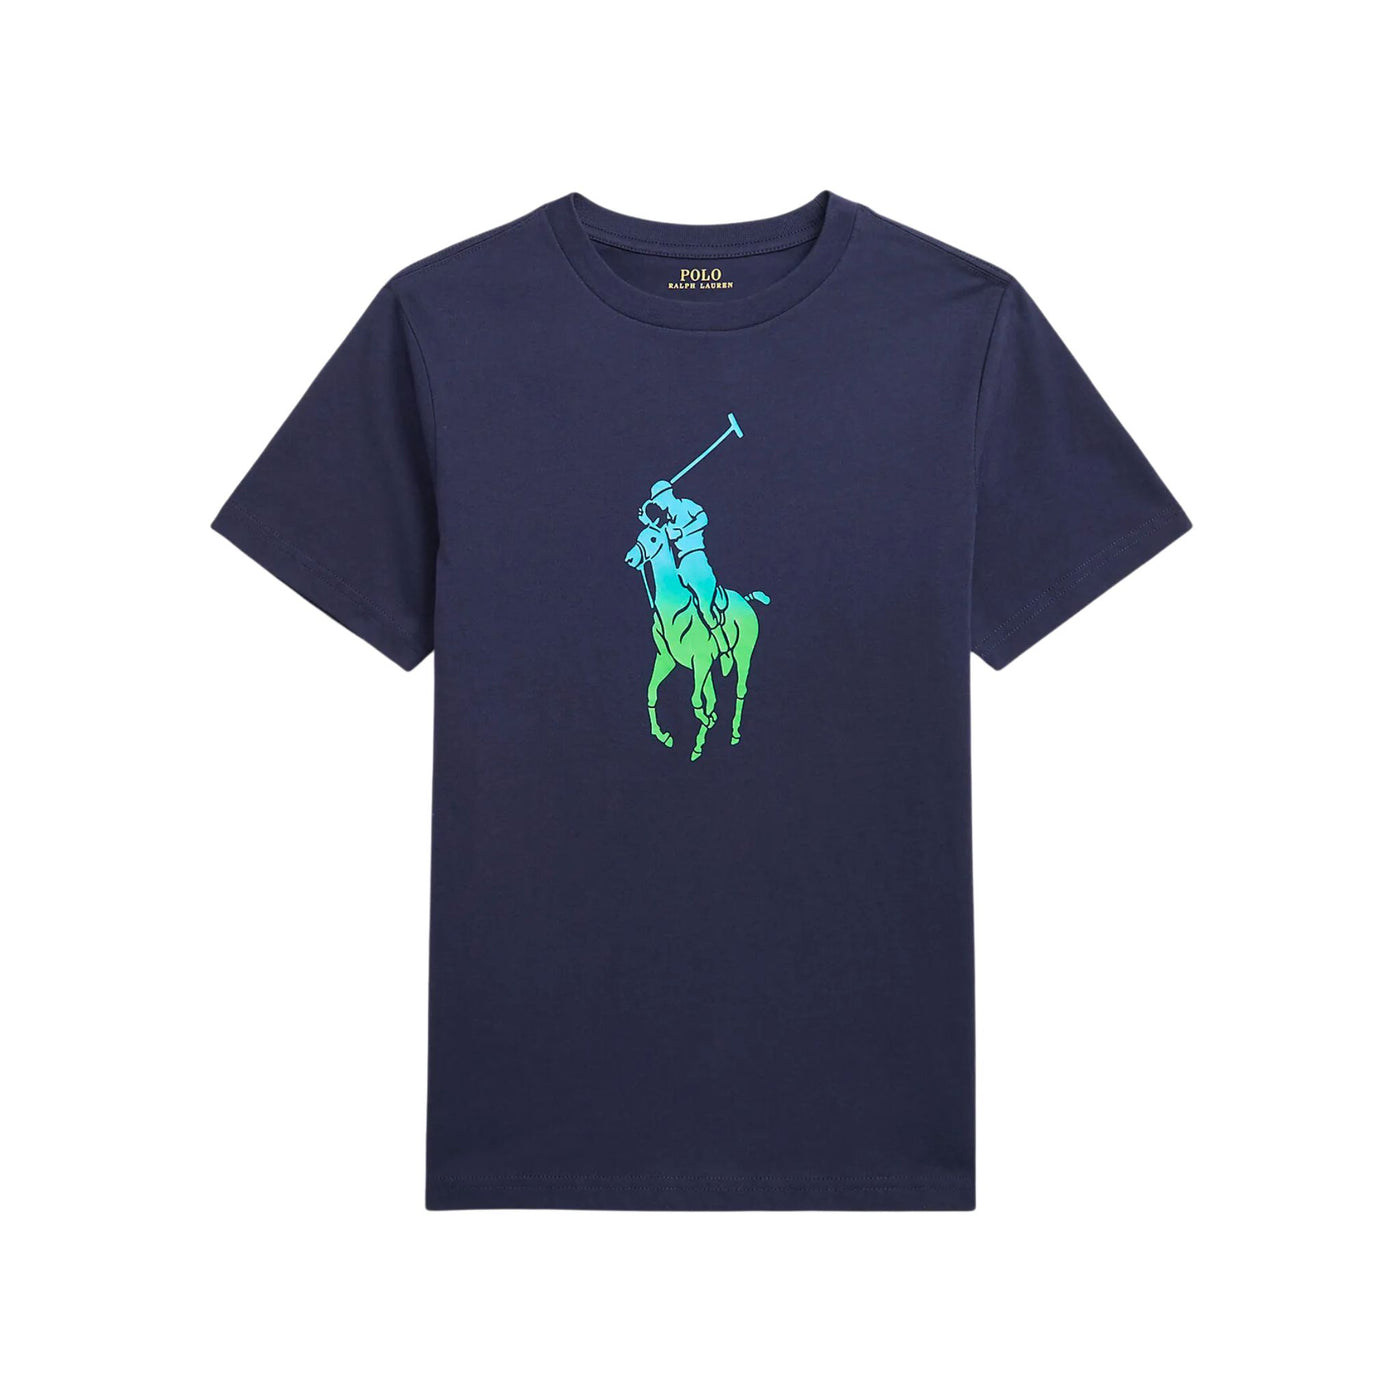 T-shirt Bambino 2-4 anni con cavallo multicolore